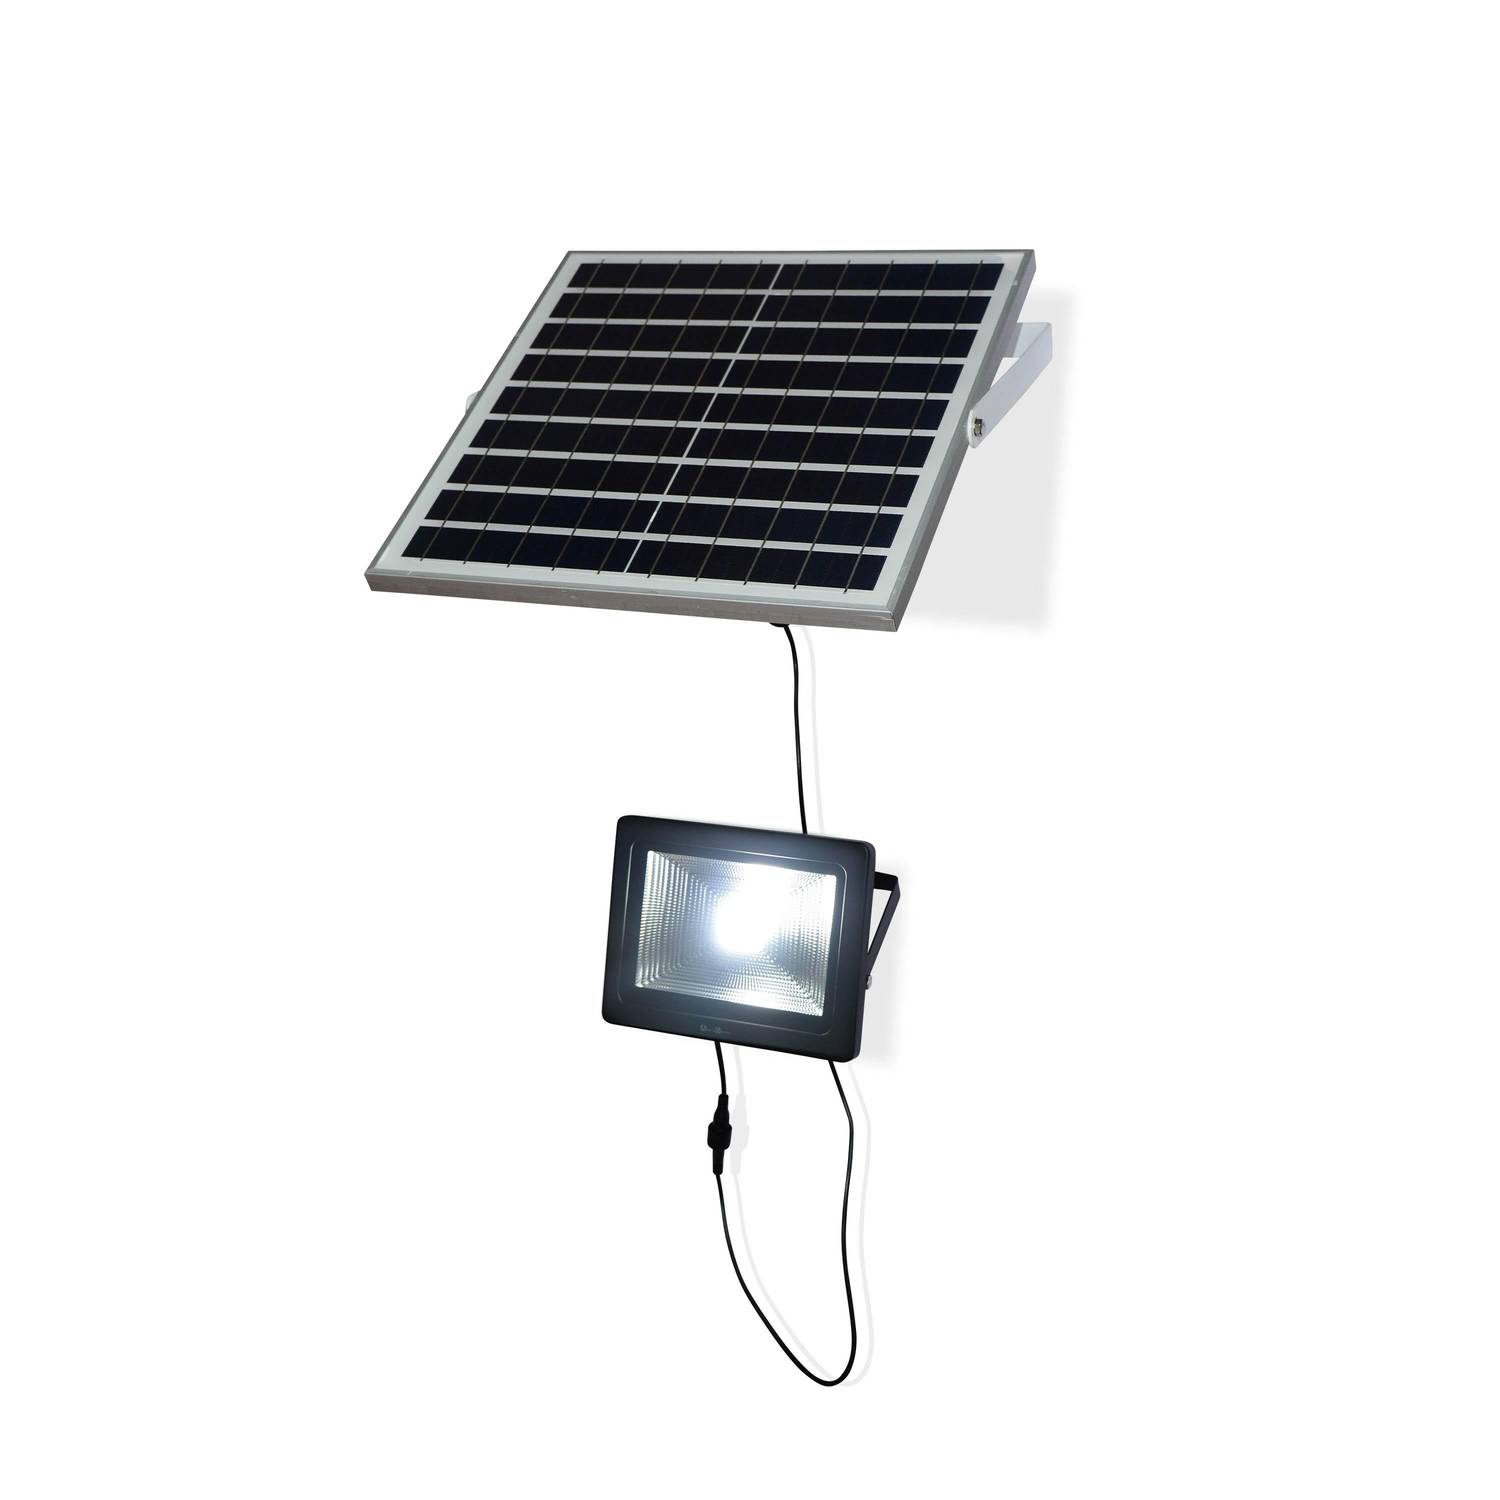 Projecteur solaire LED 20W avec panneau solaire télécommandé blanc froid, lampe résistante à la pluie et autonome, spot extra puissant 2400 lumens équivalent 150W Photo4